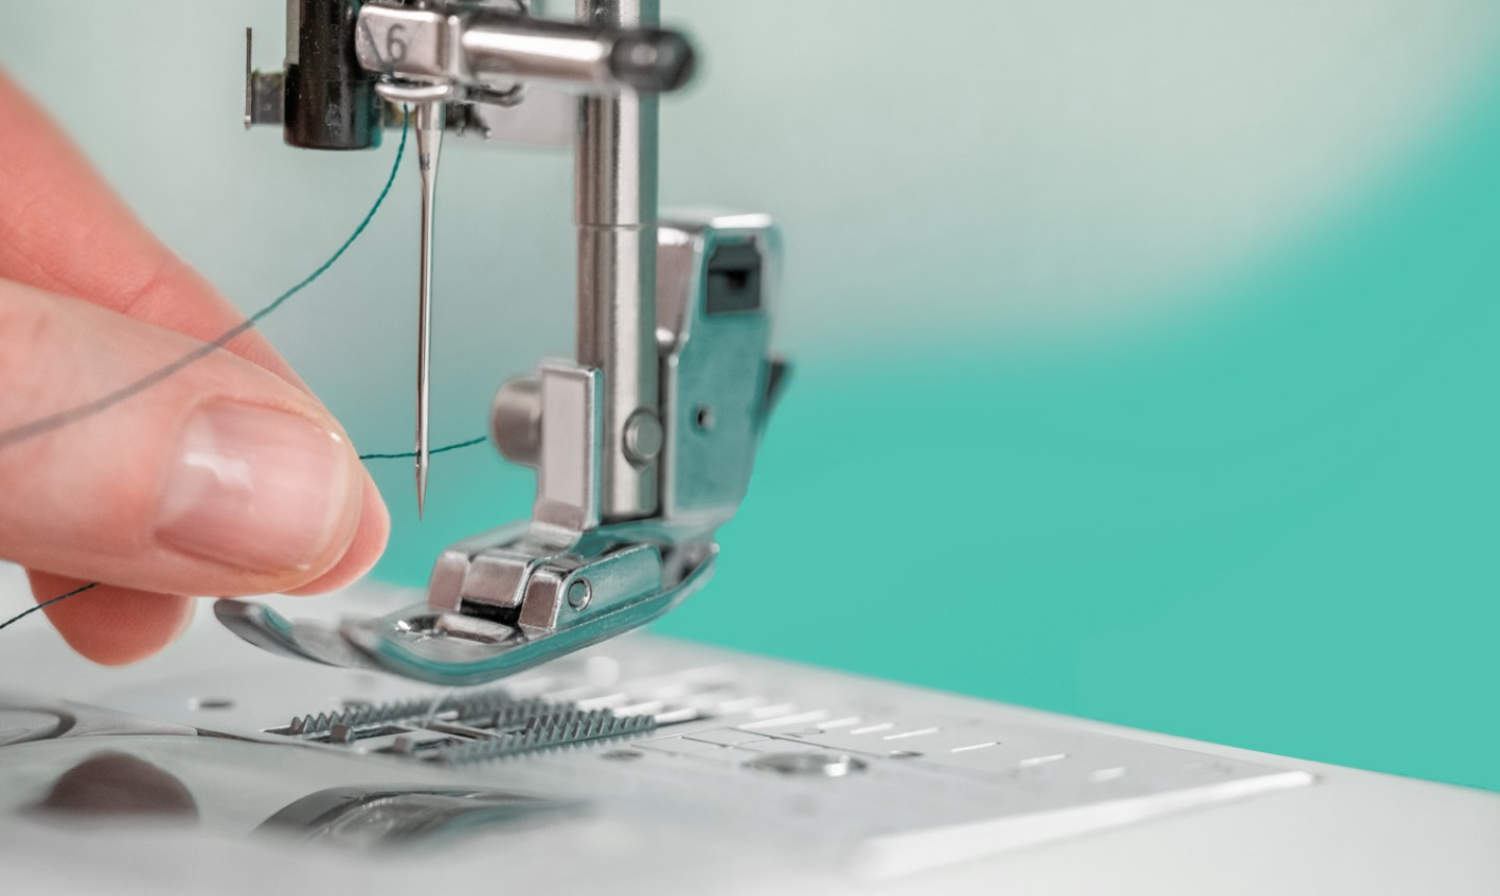 sewing-machine-close-up